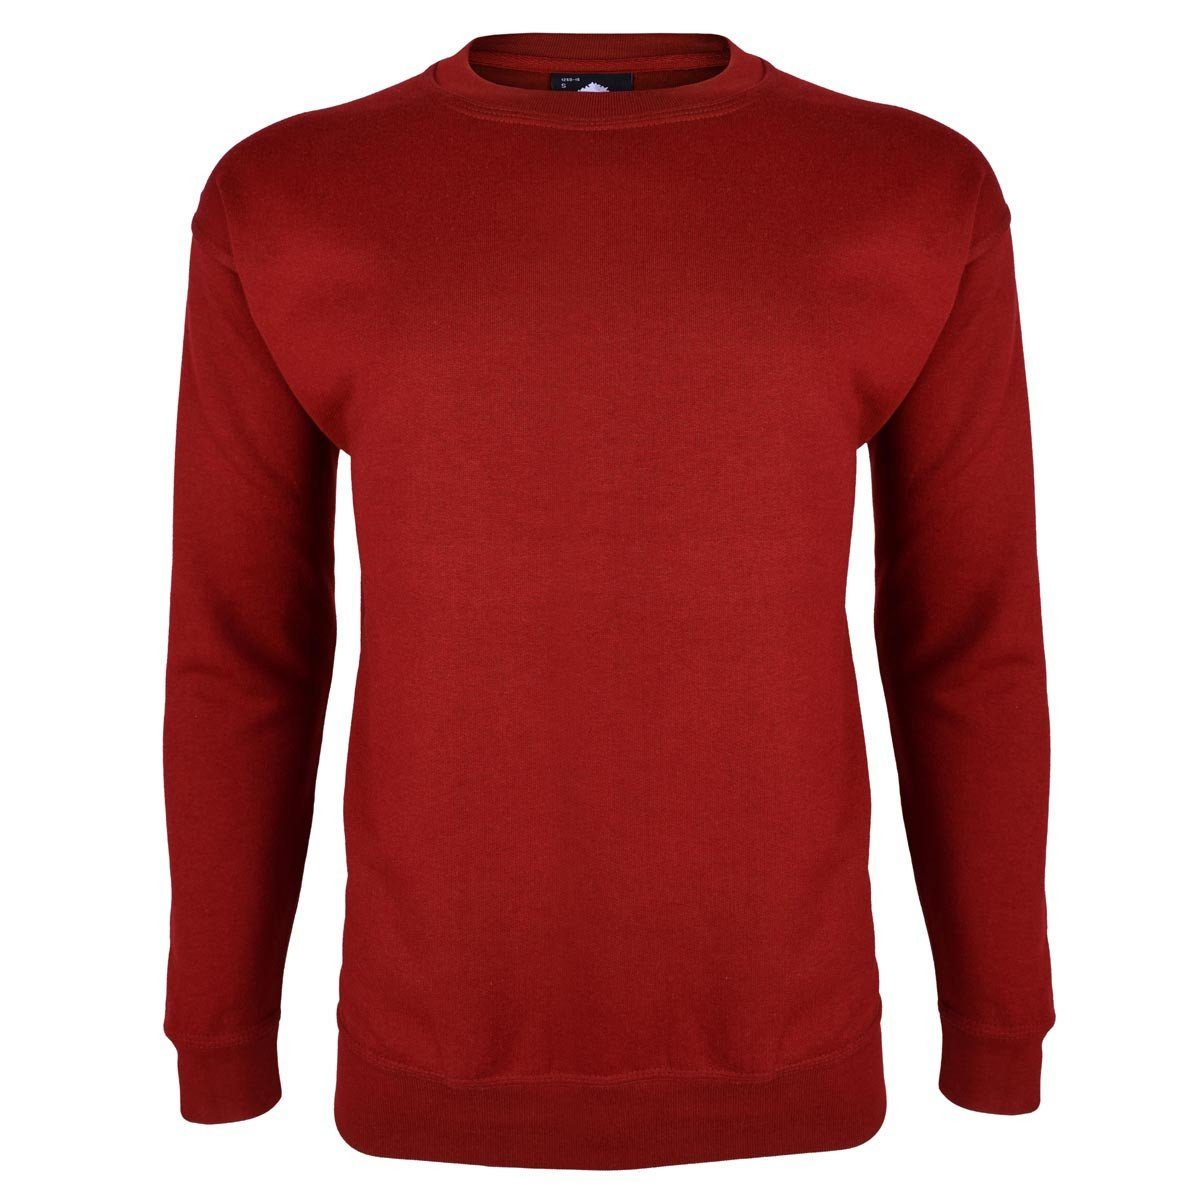 Kitrose Sweat Shirt Men's Sweat Shirt Image Red S 